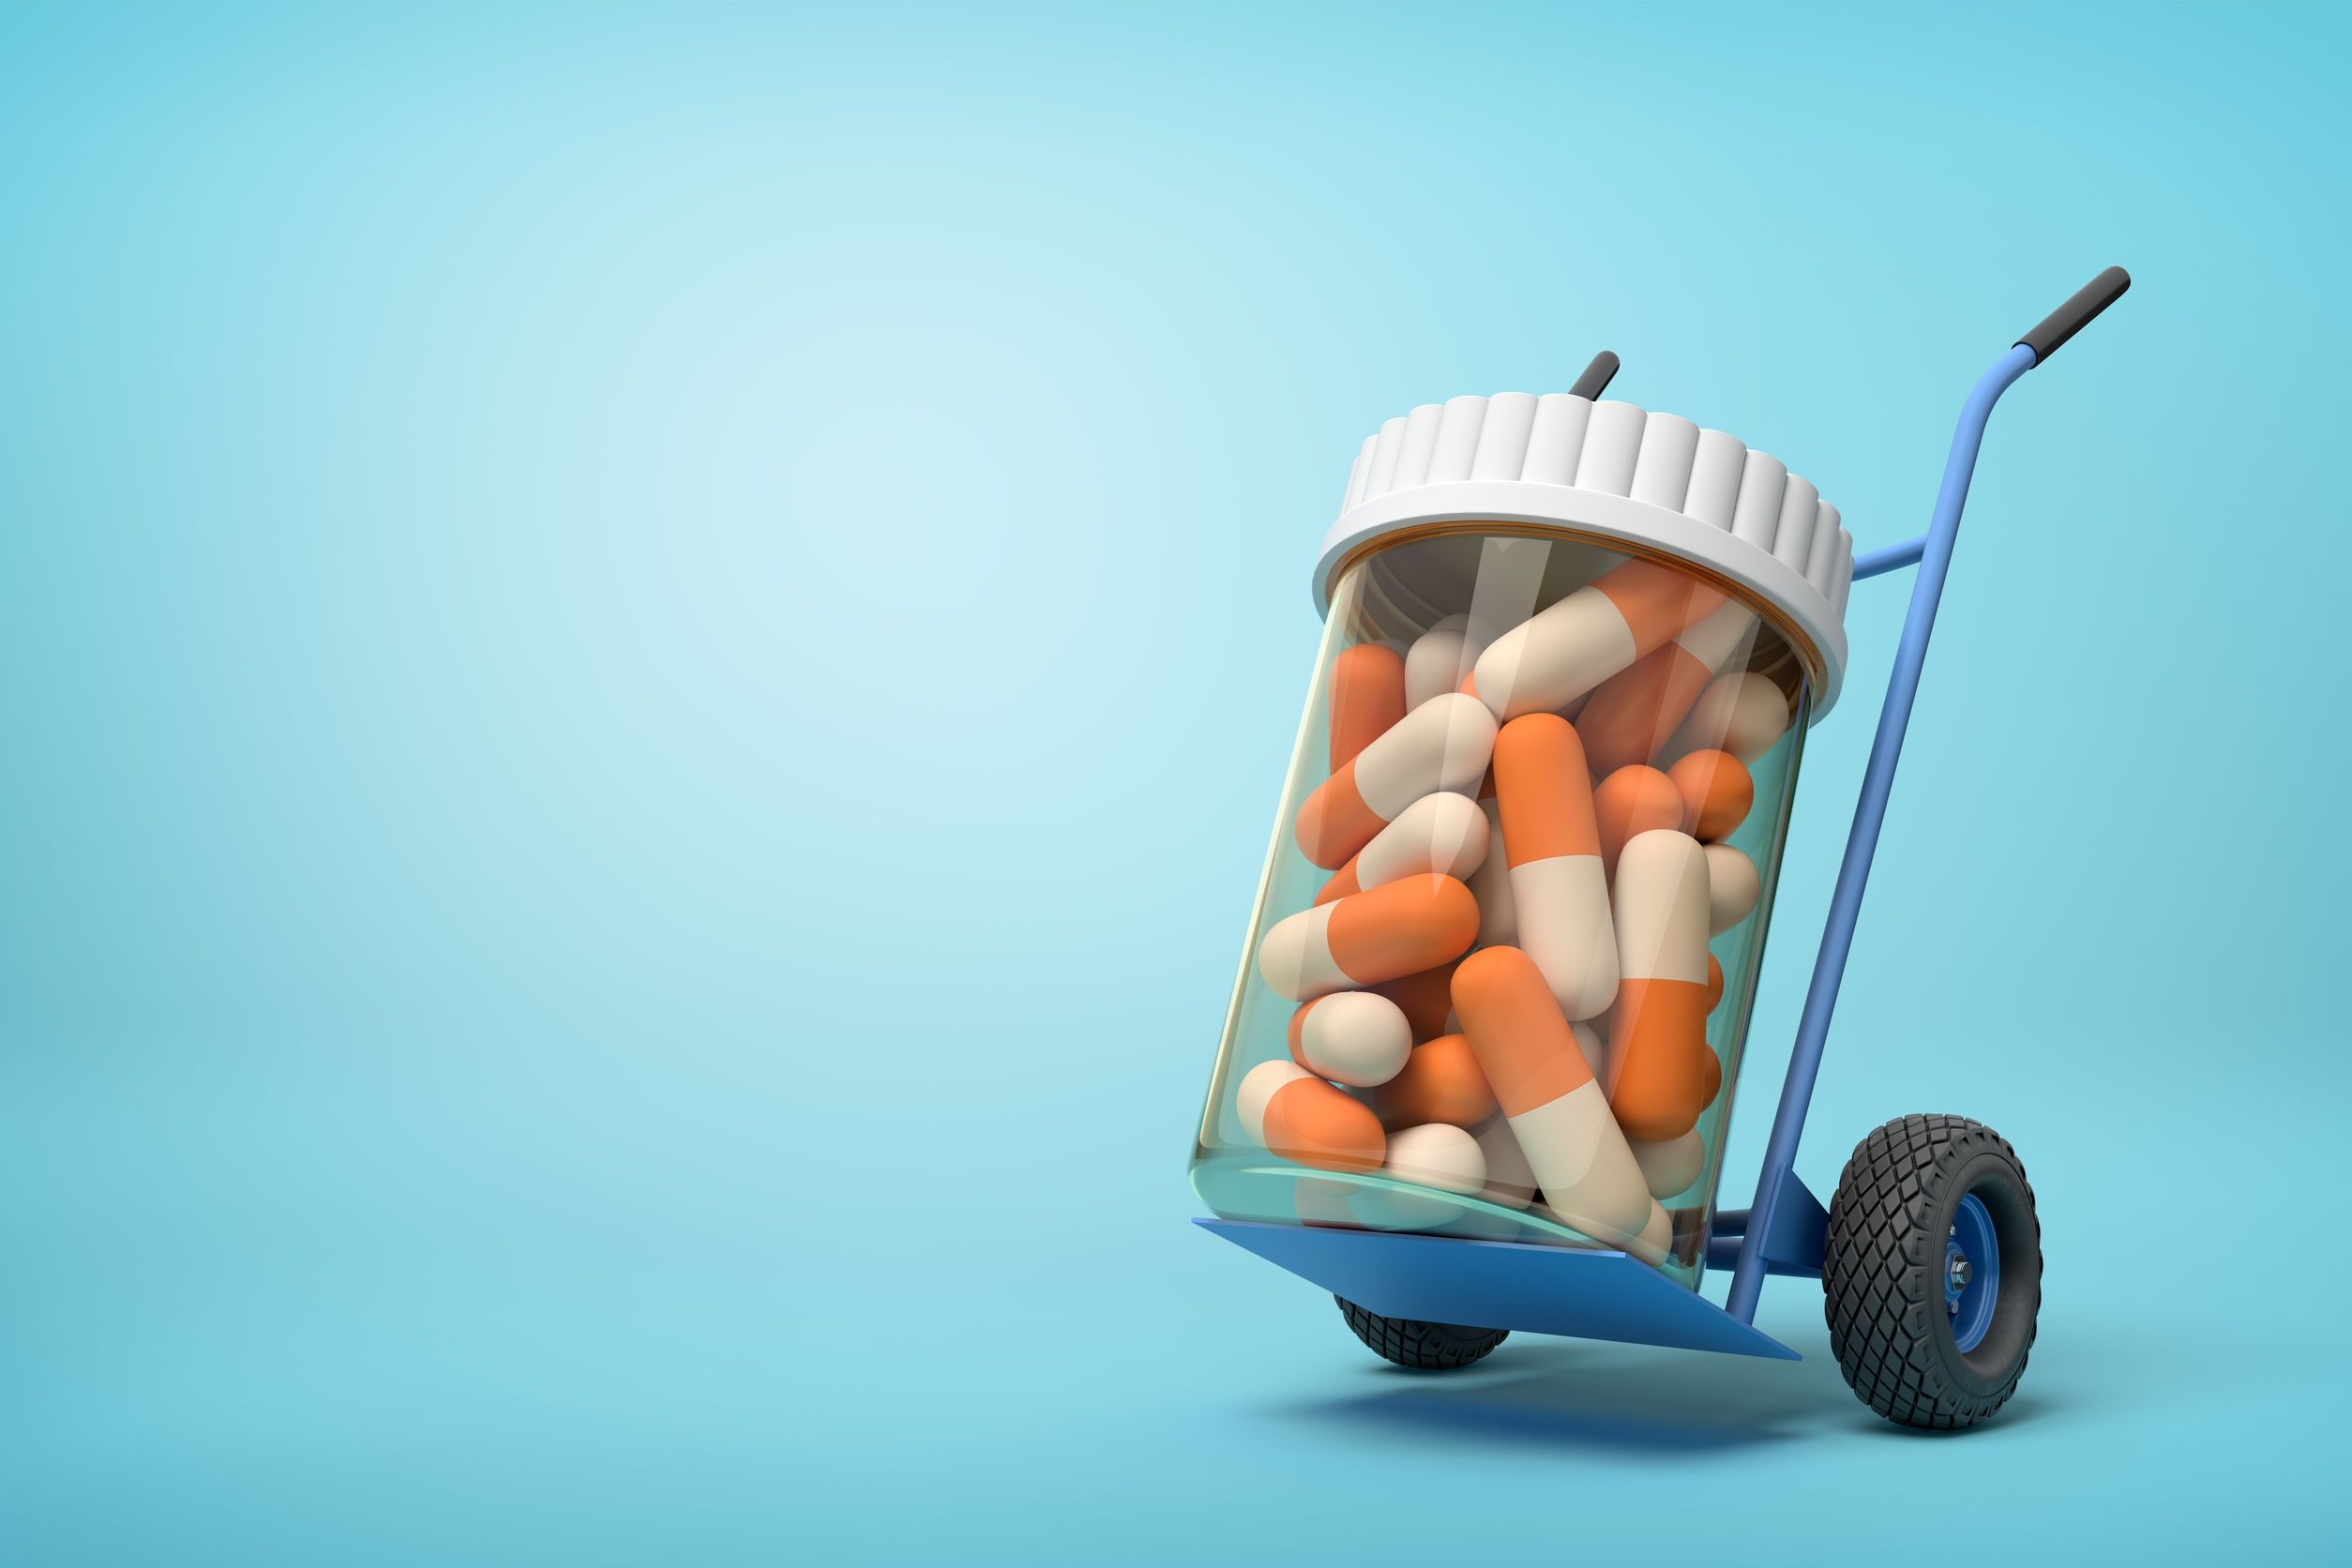 Entrega De Medicamentos a Domicilio Desde La Caja De La Farmacia